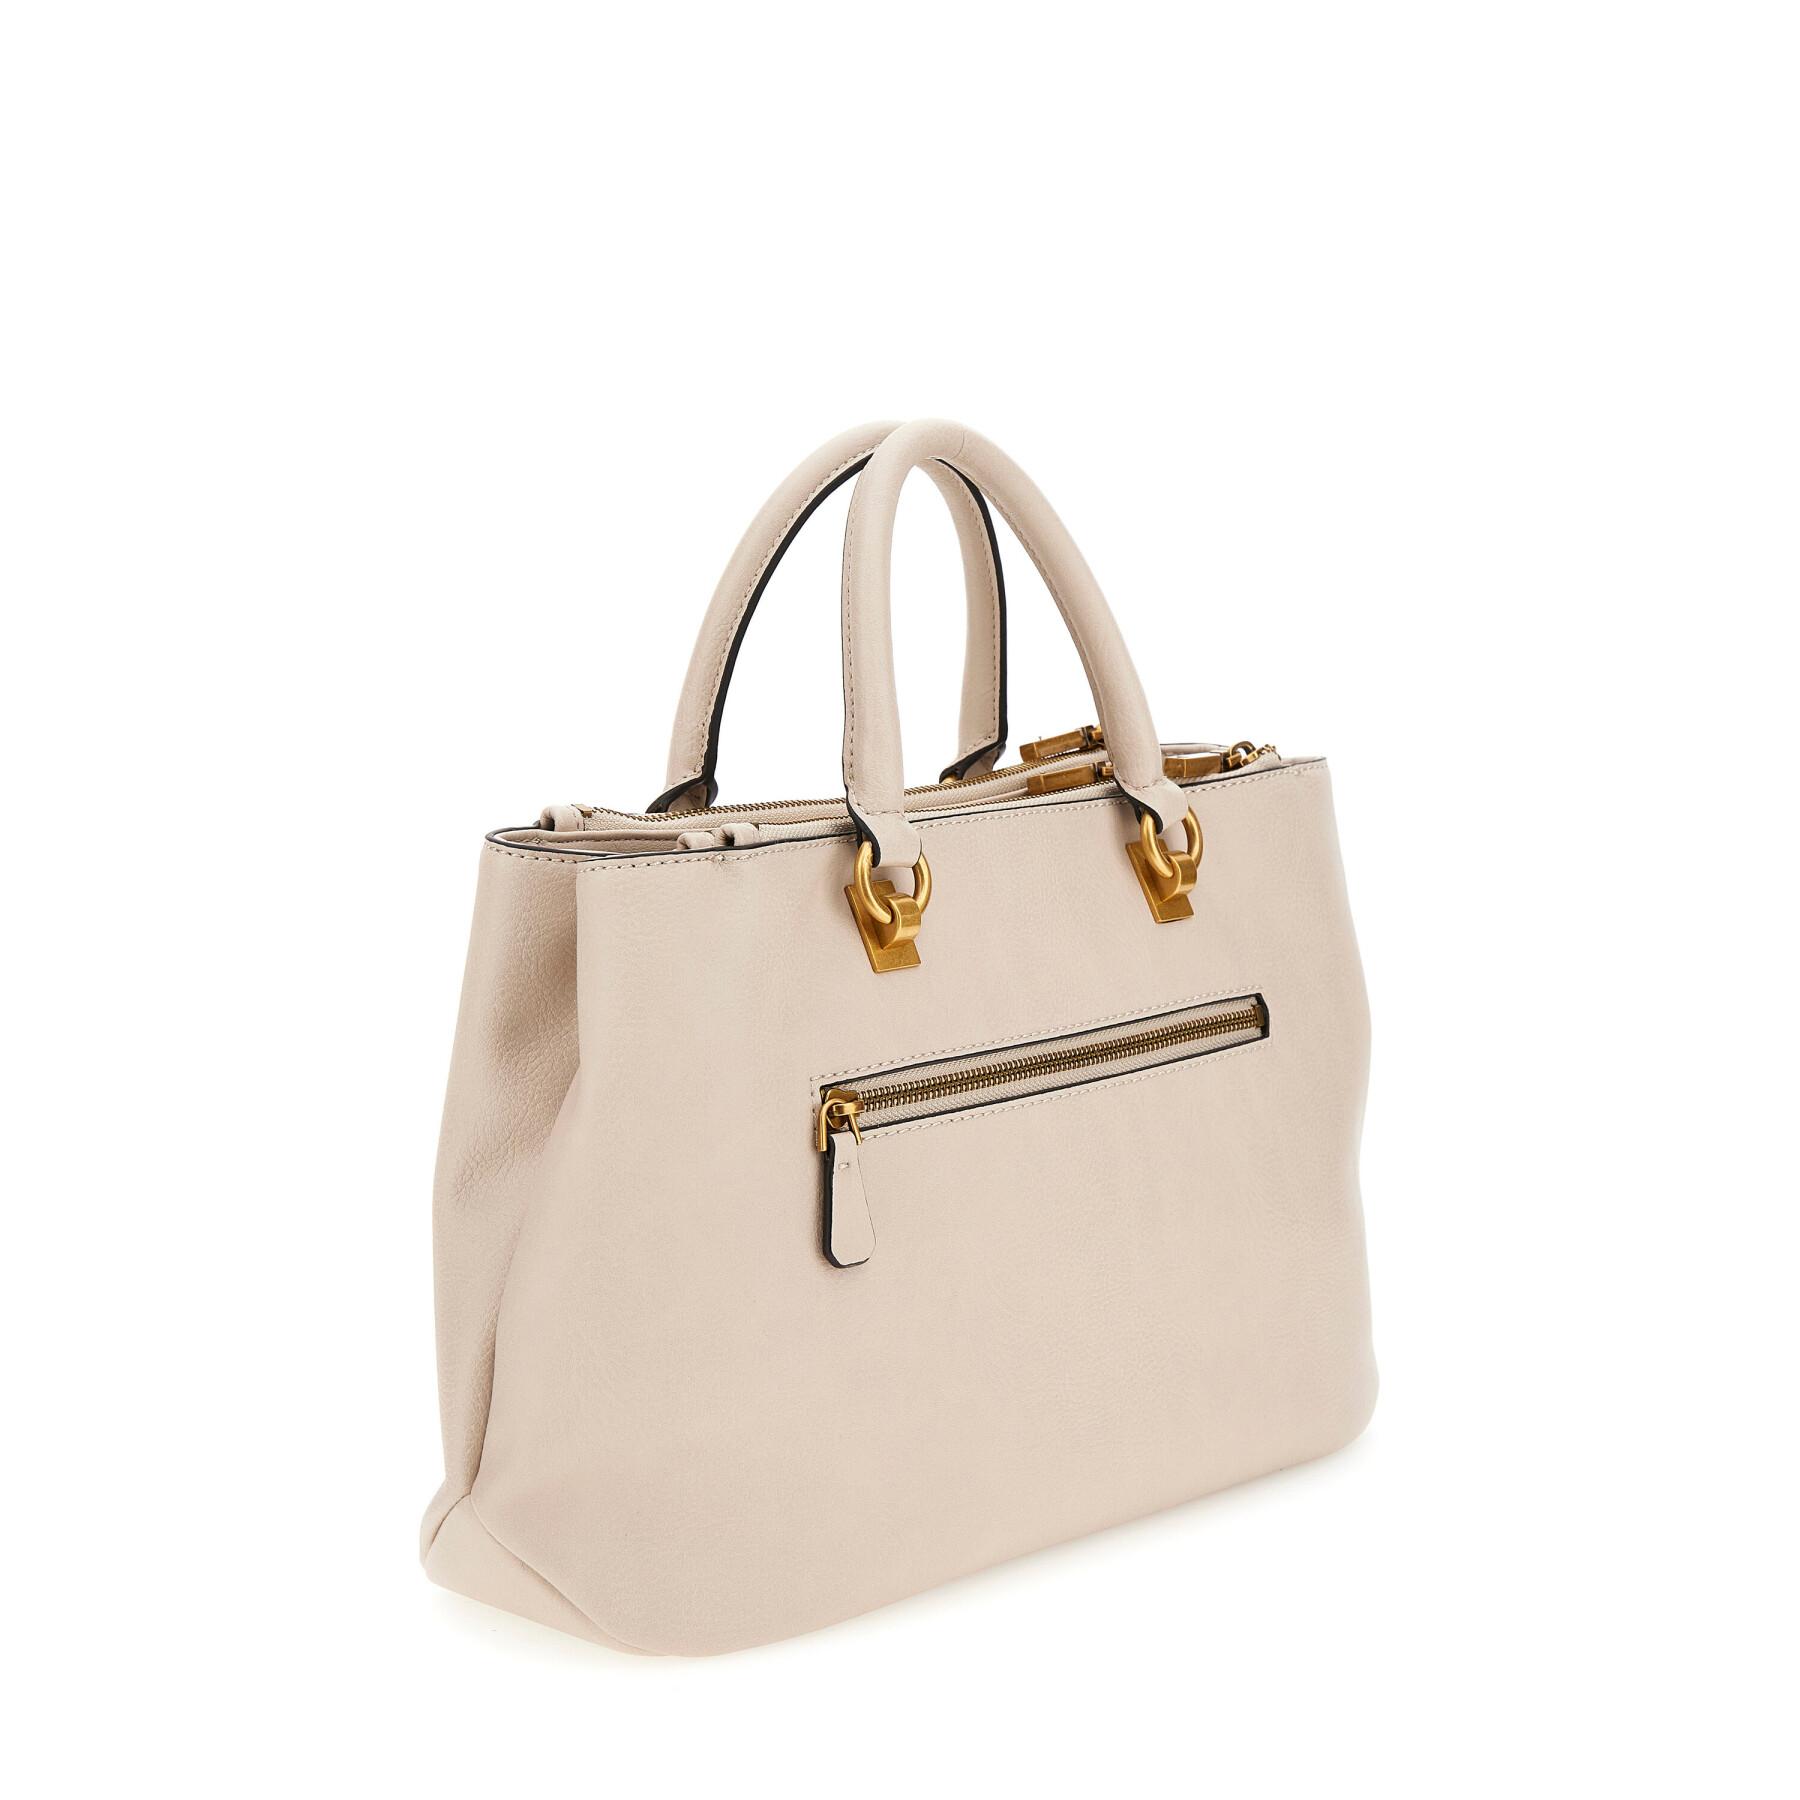 Women's handbag Guess Arja Luxury